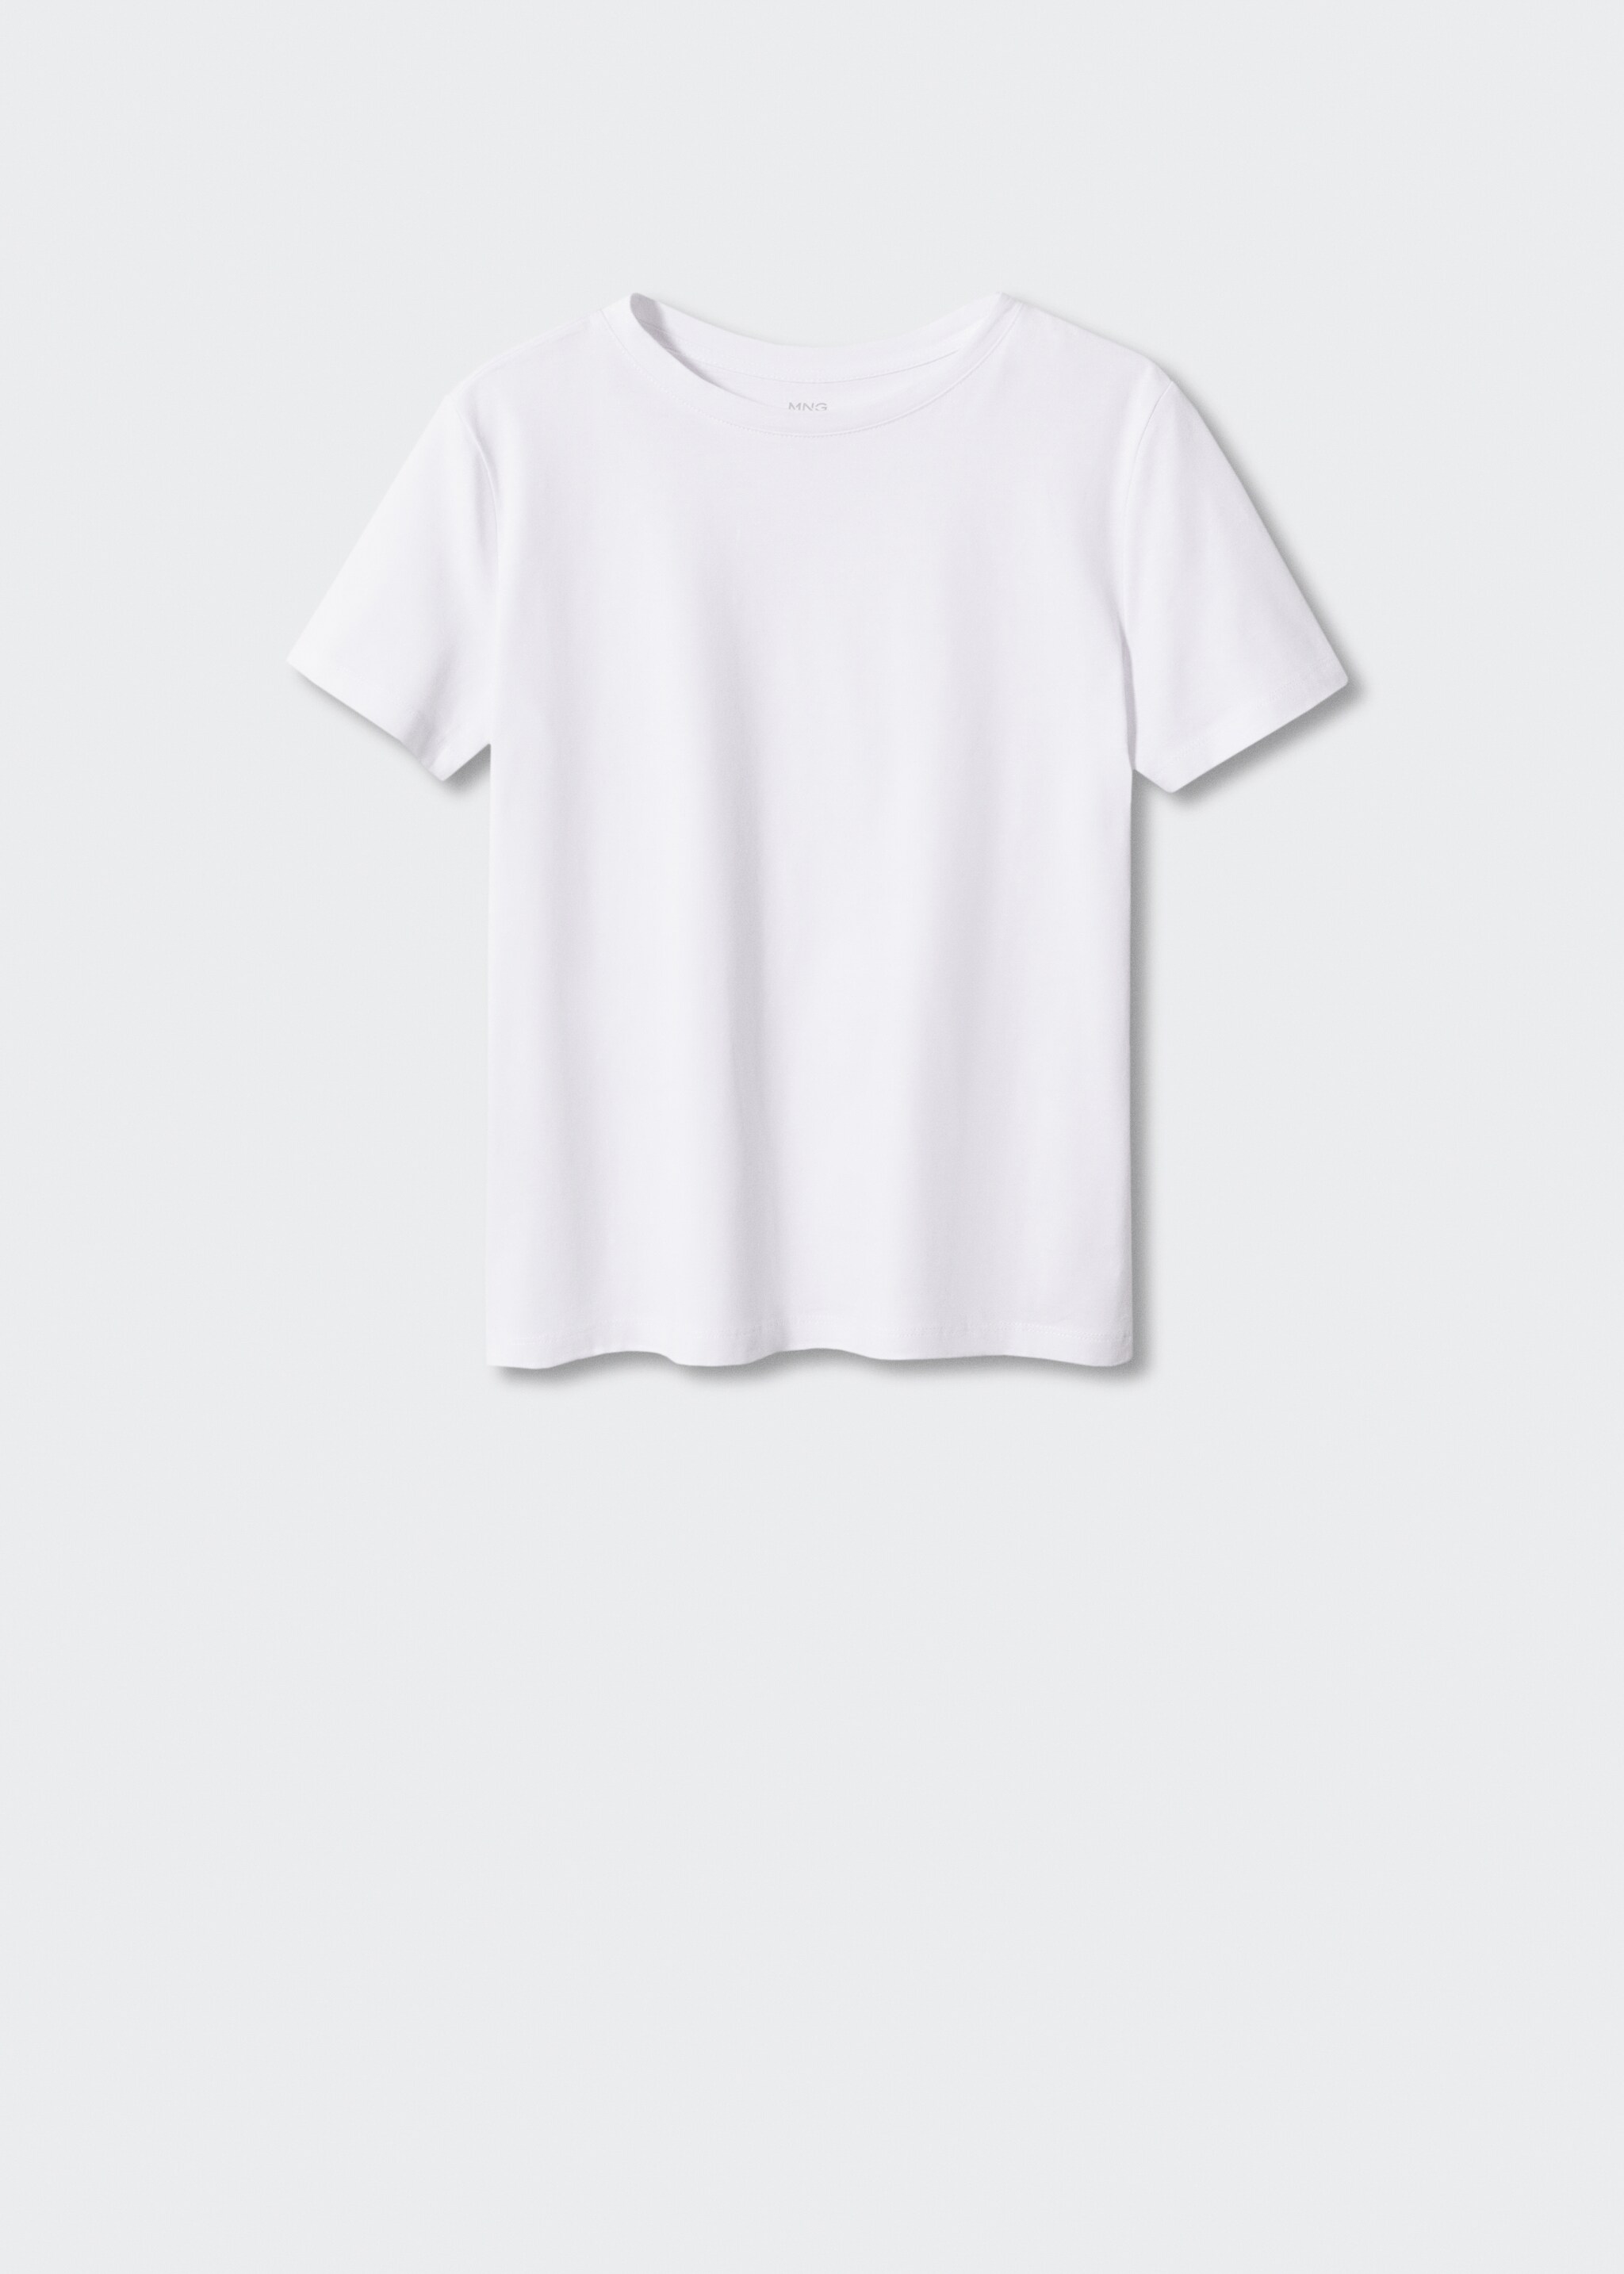 Koszulka ze 100% bawełny - Artykuł bez modela/modelki